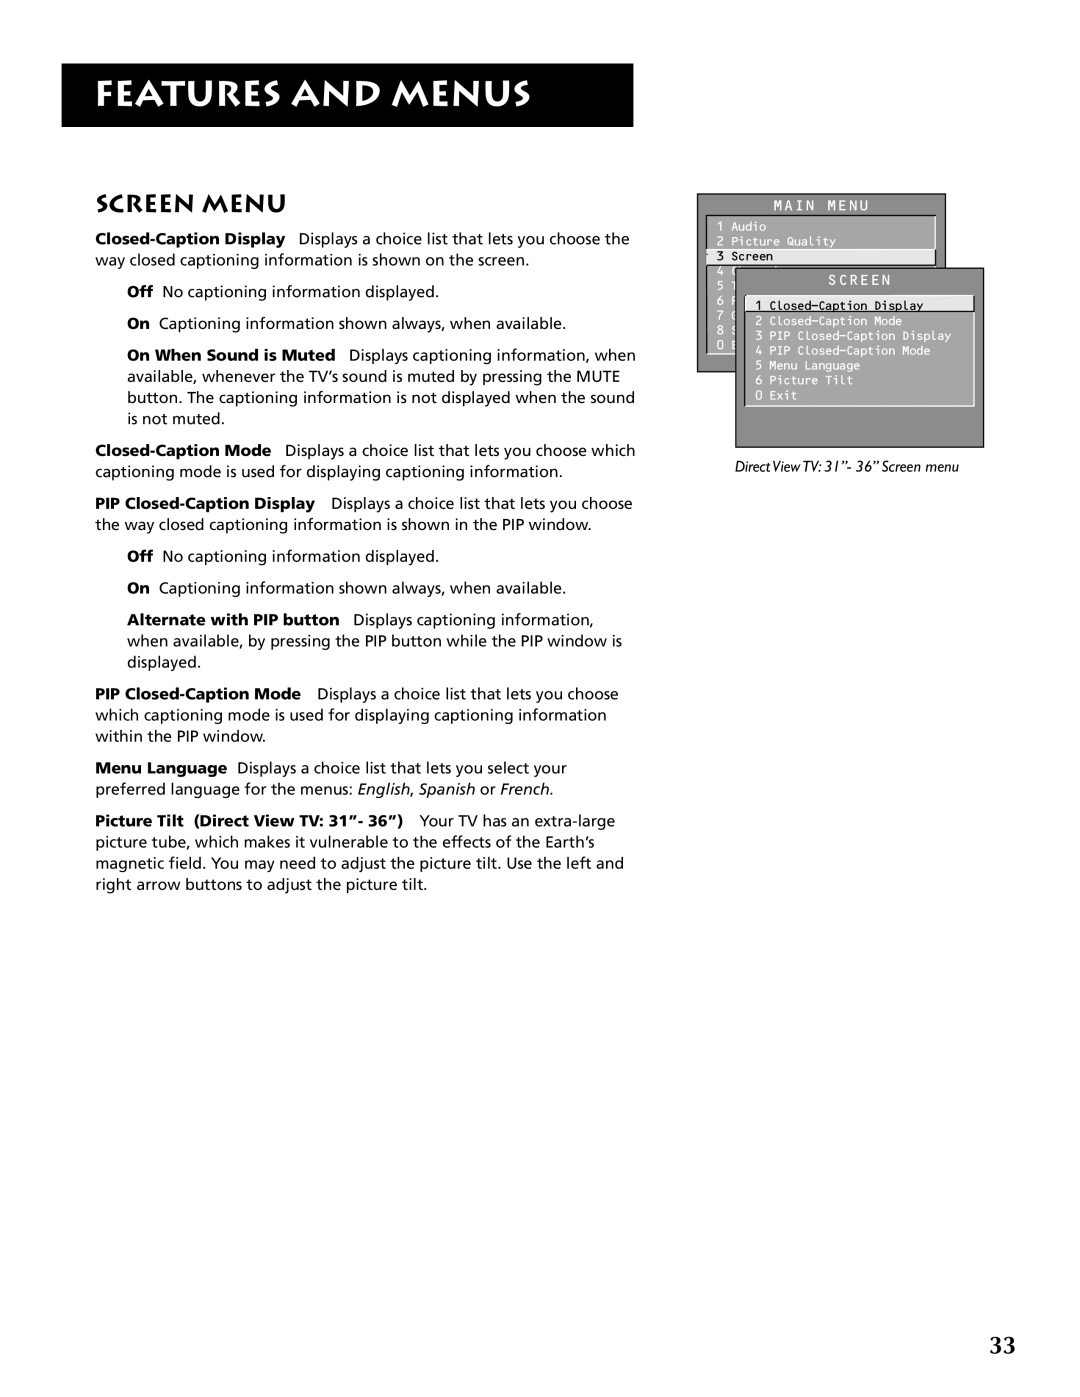 RCA F32691 manual Screen Menu, Features And Menus, Direct View TV 31”- 36” Screen menu 